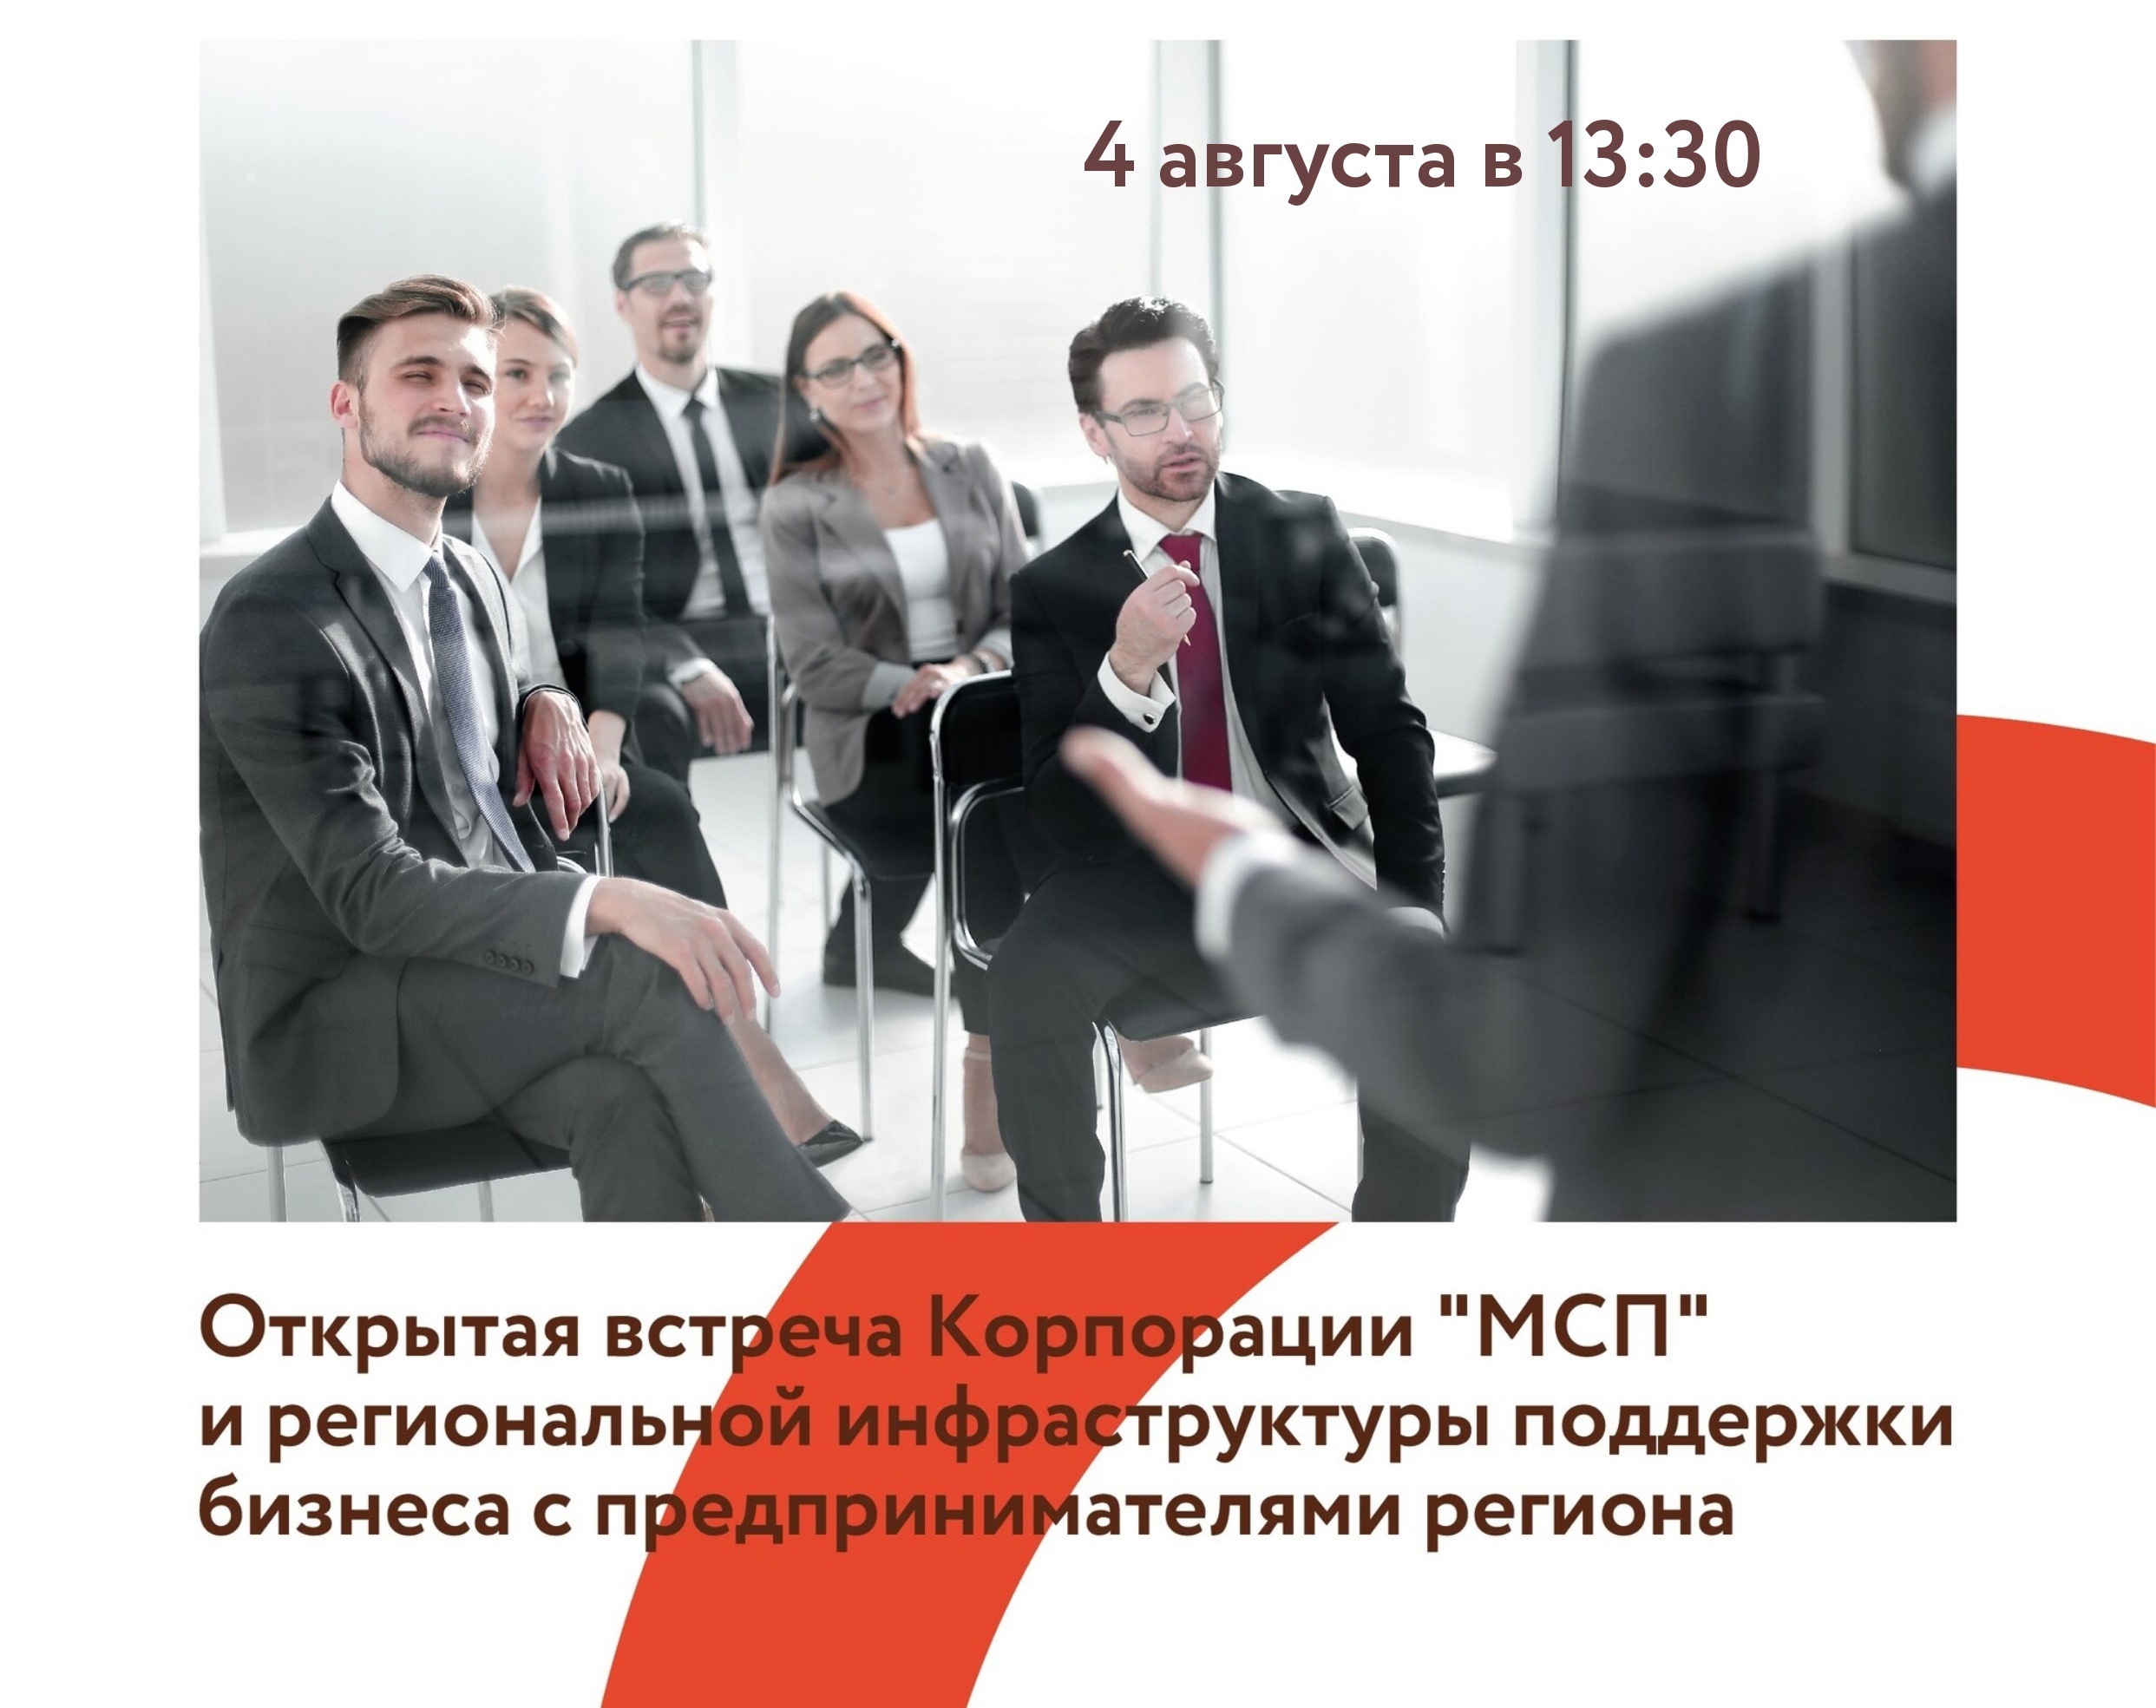 Центр «Мой бизнес» приглашает предпринимателей на встречу «Корпорация МСП: открытый диалог с бизнесом».